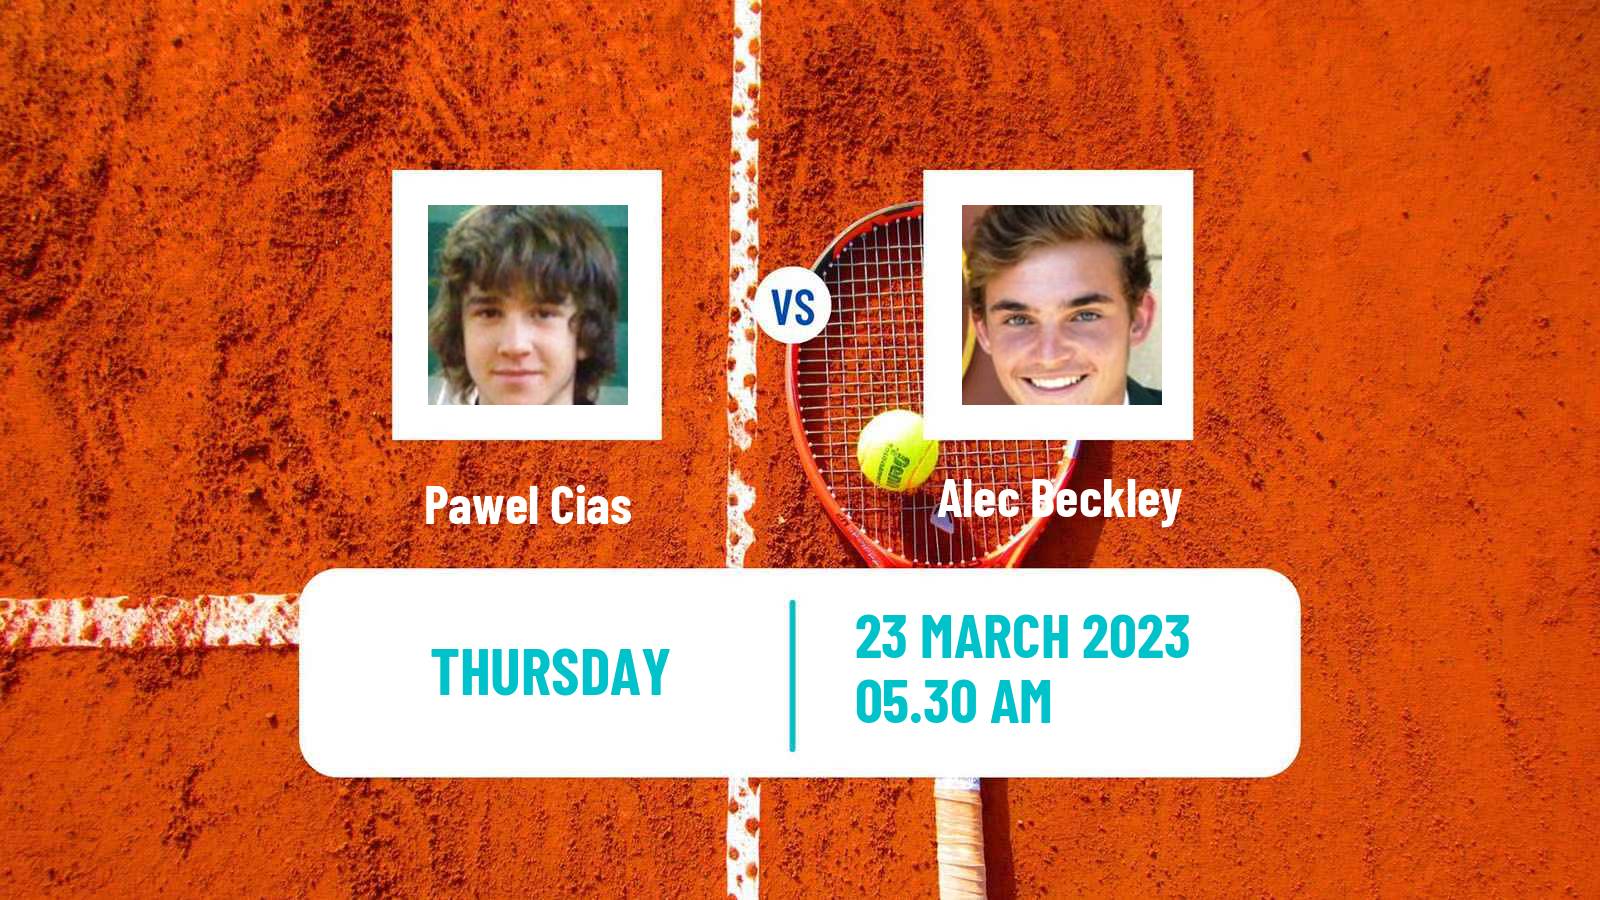 Tennis ITF Tournaments Pawel Cias - Alec Beckley